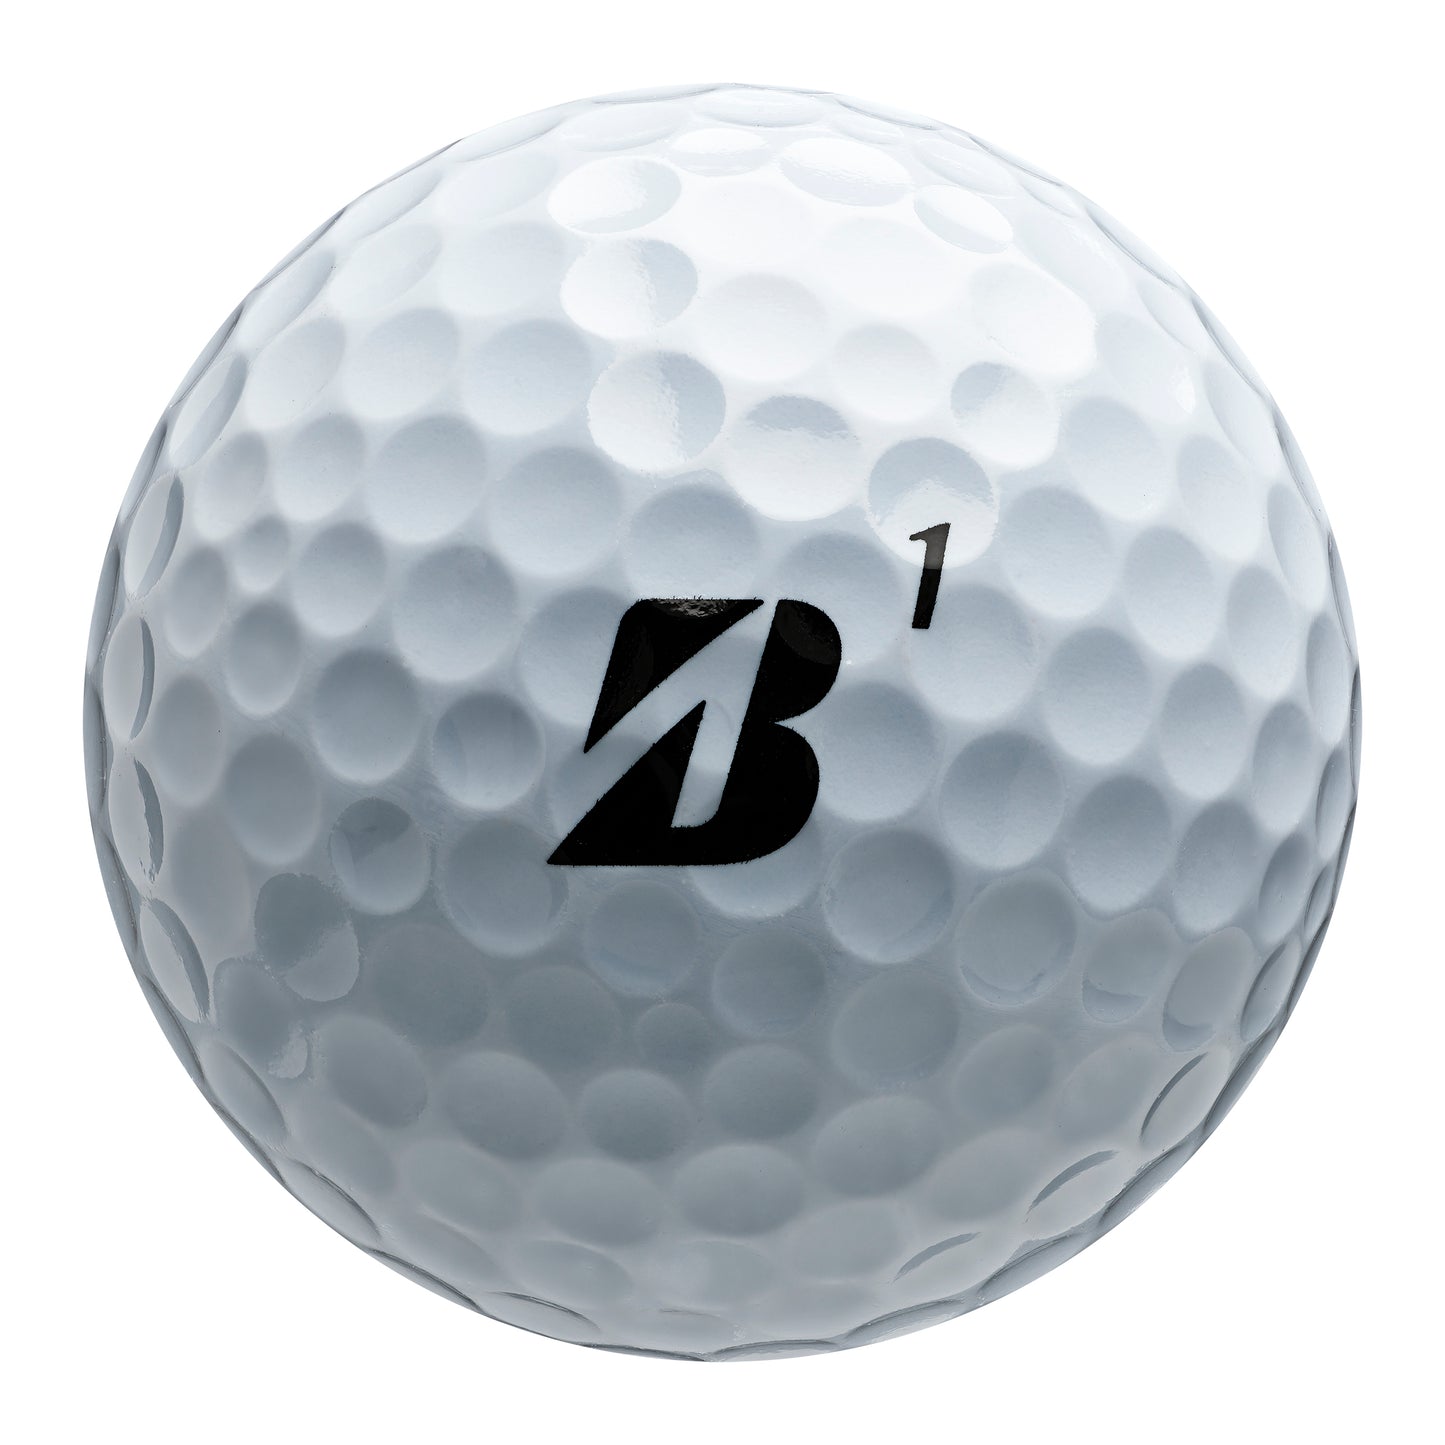 Bridgestone E6 Golf Balls - White   